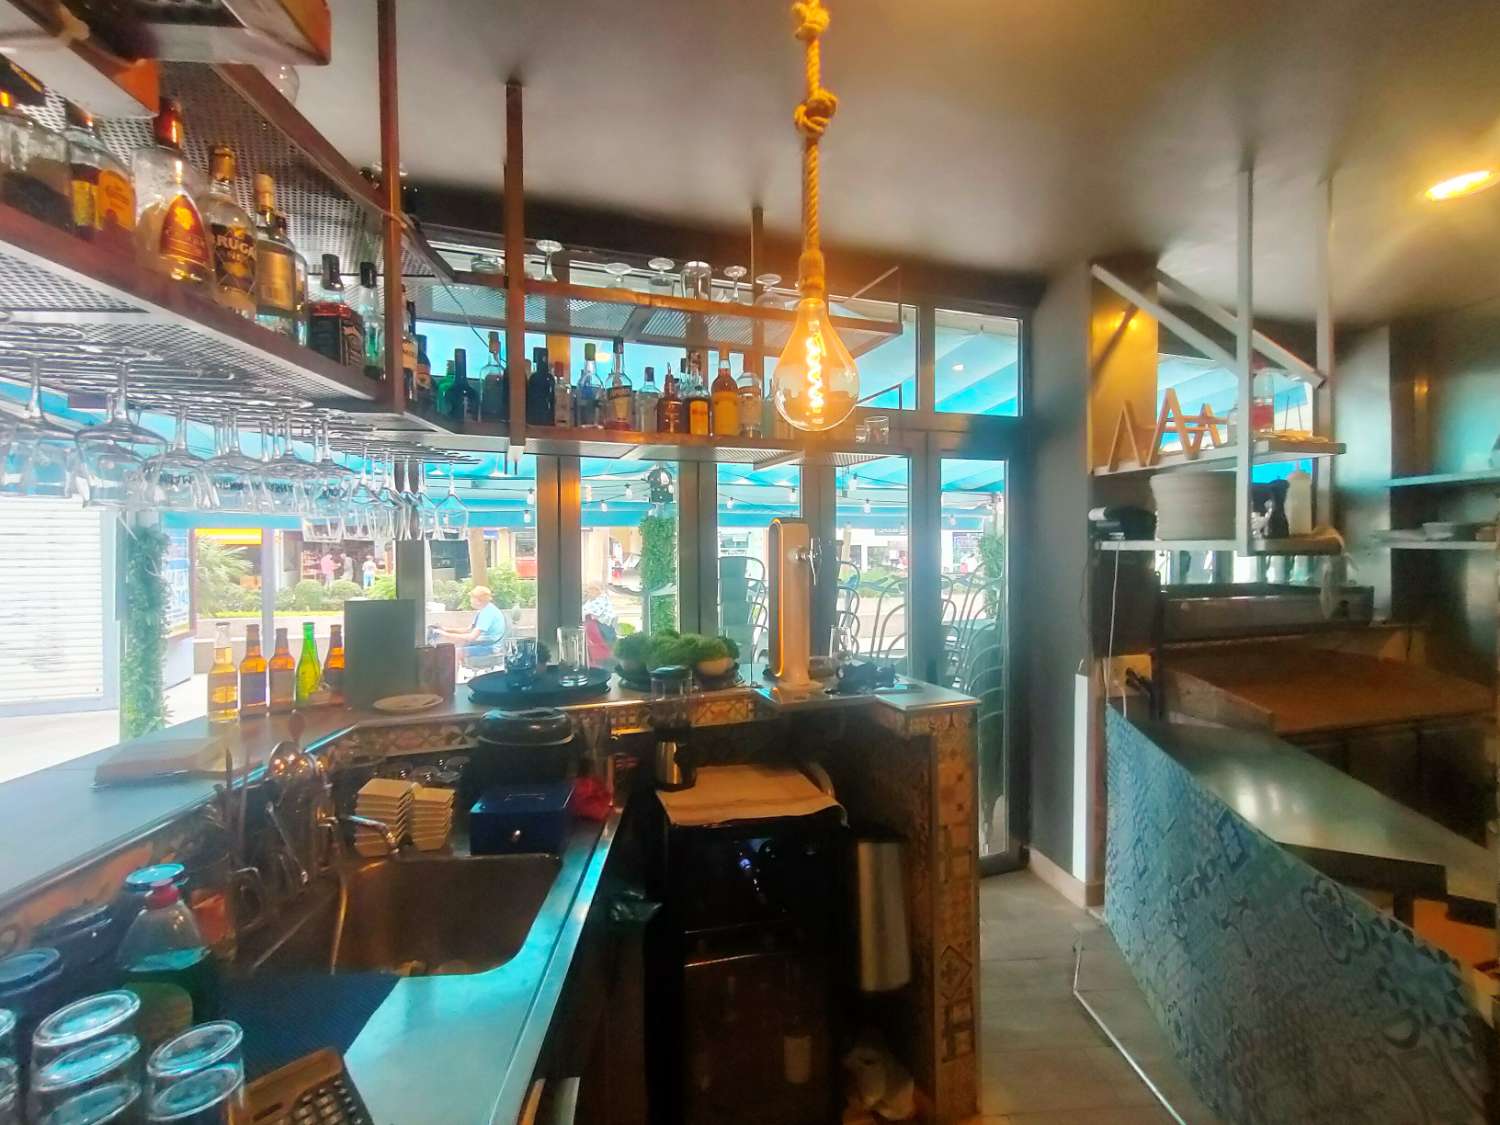 Pizzeria Cafetaria in Benalmadena Costa del Sol - Main Avenue